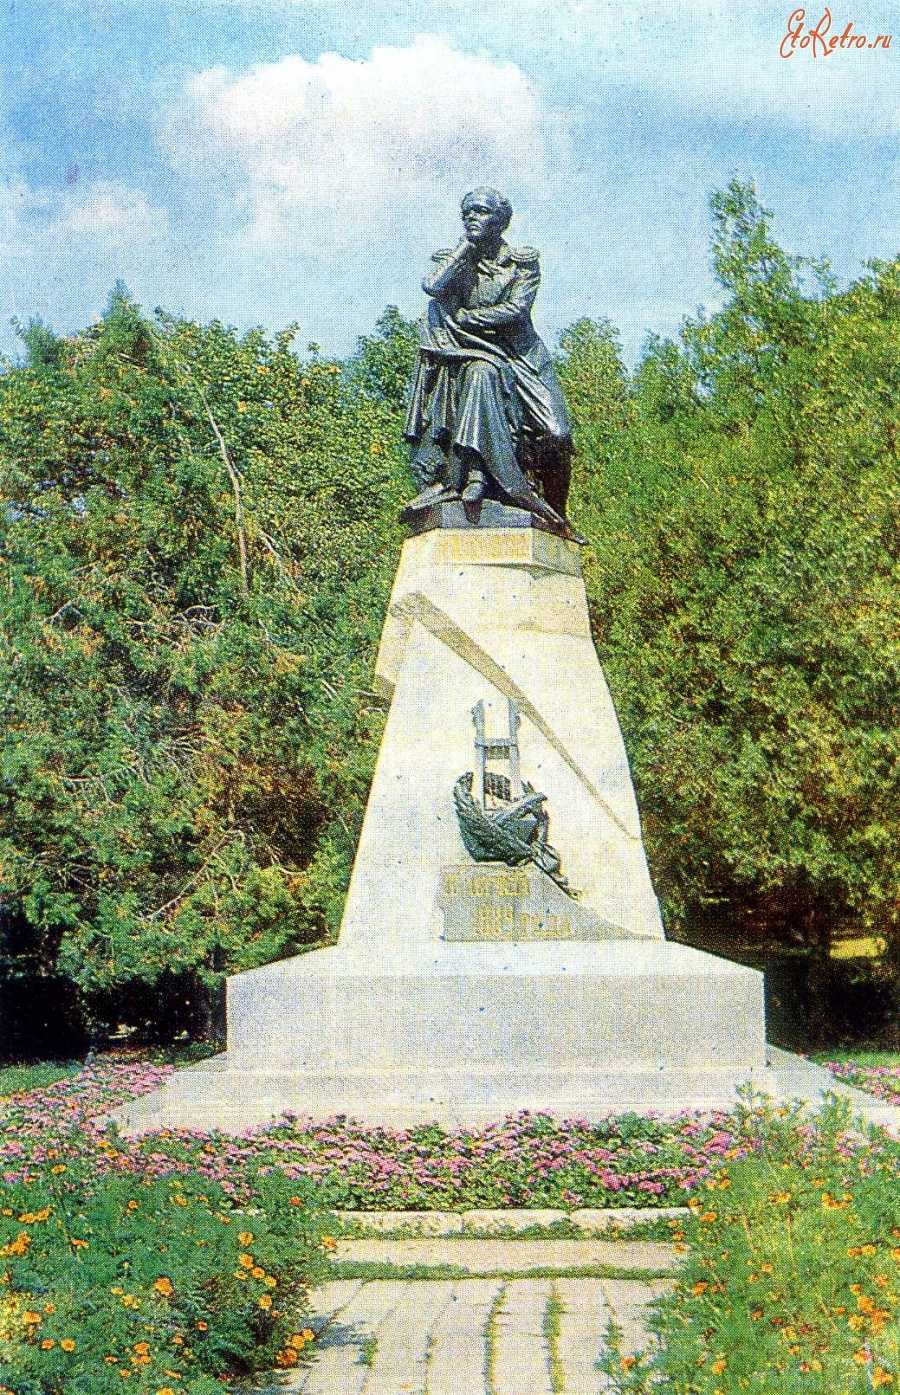 Памятник  в честь знаменитого поэта михаила лермонтова